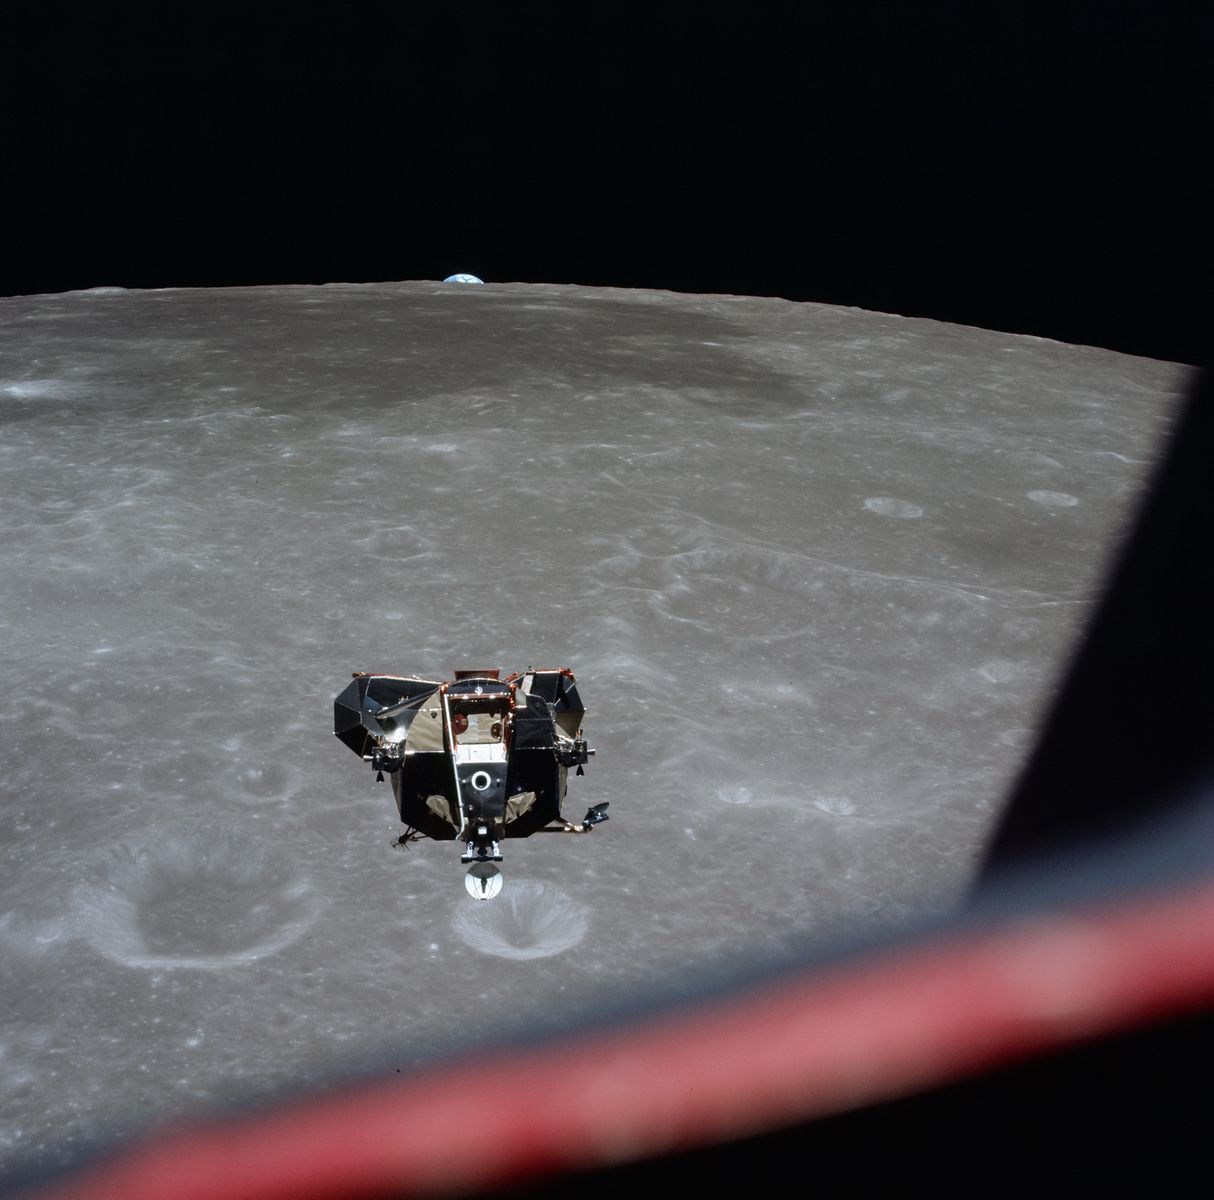 Si nous avons la chance de disposer de photographies et de vidéos documentant l’alunissage, rien n’est comparable à la vue qu’avaient les astronautes lorsqu’ils s’approchaient de la surface lunaire. Alors que Neil Armstrong et Buzz Aldrin <a href="https://www.geo.fr/histoire/apollo-11-et-les-premiers-pas-sur-la-lune-retour-sur-la-mission-qui-a-marque-lhistoire-du-spatial-210987" rel="noreferrer noopener">descendaient vers la surface de la Lune dans le module lunaire</a>, Michael Collins a documenté la scène depuis le ciel. Dans son livre de 1974 <a href="https://www.renaud-bray.com/Livres_Produit.aspx?id=2721346&def=Carrying+the+Fire%2CCOLLINS%2C+MICHAEL%2C9780374537760&page=184" rel="noreferrer noopener"><em>Carrying the Fire:</em></a> <a href="https://www.renaud-bray.com/Livres_Produit.aspx?id=2721346&def=Carrying+the+Fire%2CCOLLINS%2C+MICHAEL%2C9780374537760&page=184" rel="noreferrer noopener"><em>An Astronaut’s Journeys</em></a>, <a href="https://www.nationalgeographic.fr/espace/michael-collins-astronaute-et-protagoniste-de-lhistoire-dapollo-11" rel="noreferrer noopener">Collins décrit poétiquement</a> le moment où il a vu la Terre s’élever au-dessus de la surface de la Lune: «Elle pointe son petit bonnet bleu au-dessus du rebord escarpé. Puis, sans qu’on lui ait tiré dessus, elle surgit à l’horizon dans un élan de couleurs et de mouvements inattendus».